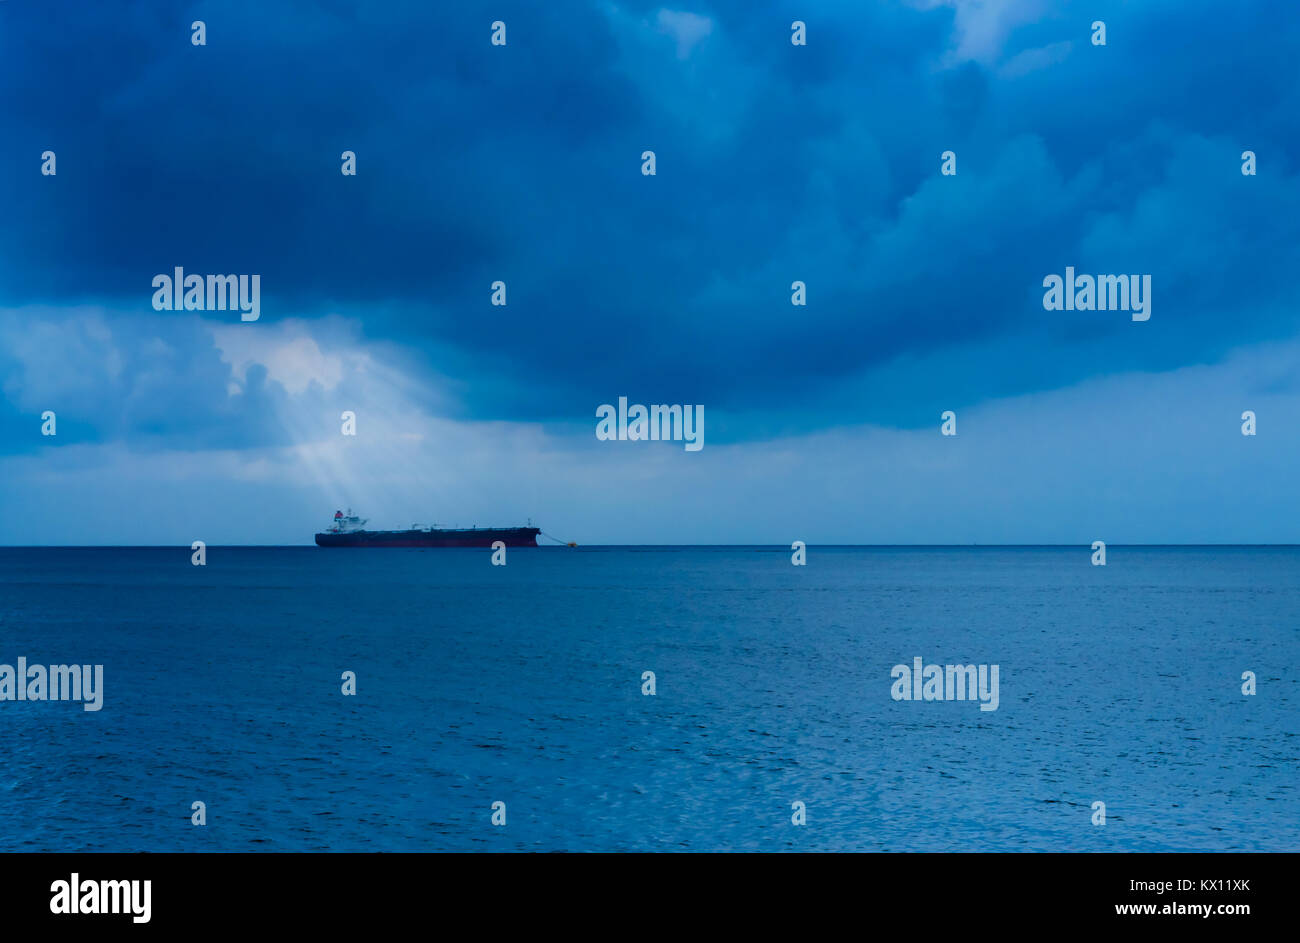 Sole brillante raggi provenienti attraverso dense nubi su una solitaria nave in mare Foto Stock